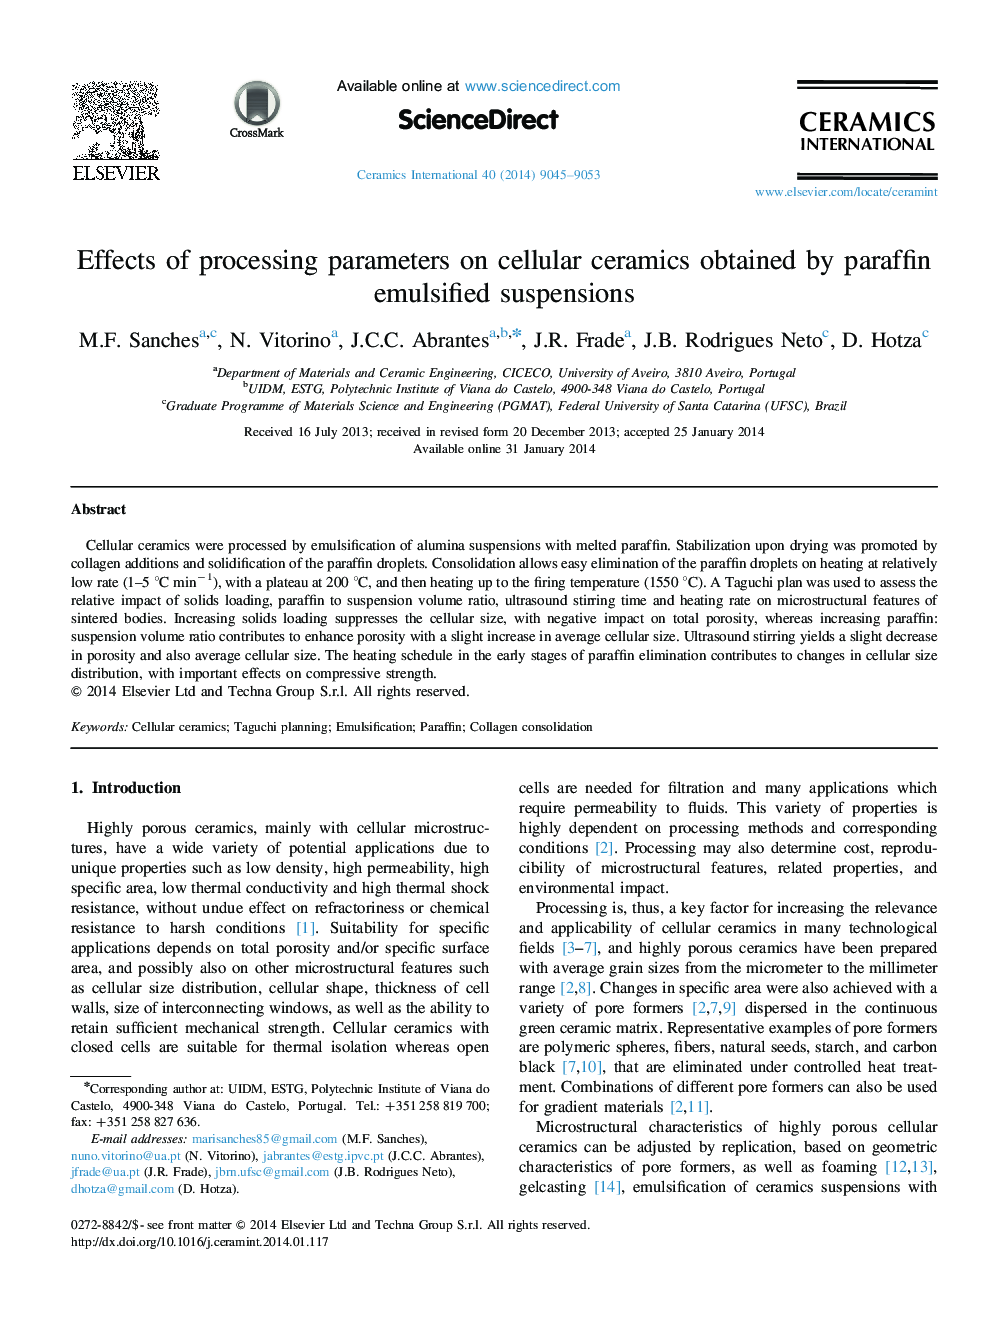 اثرات پارامترهای پردازش بر روی سرامیک سلولی به دست آمده از تعلیق امولسیون پارافین 